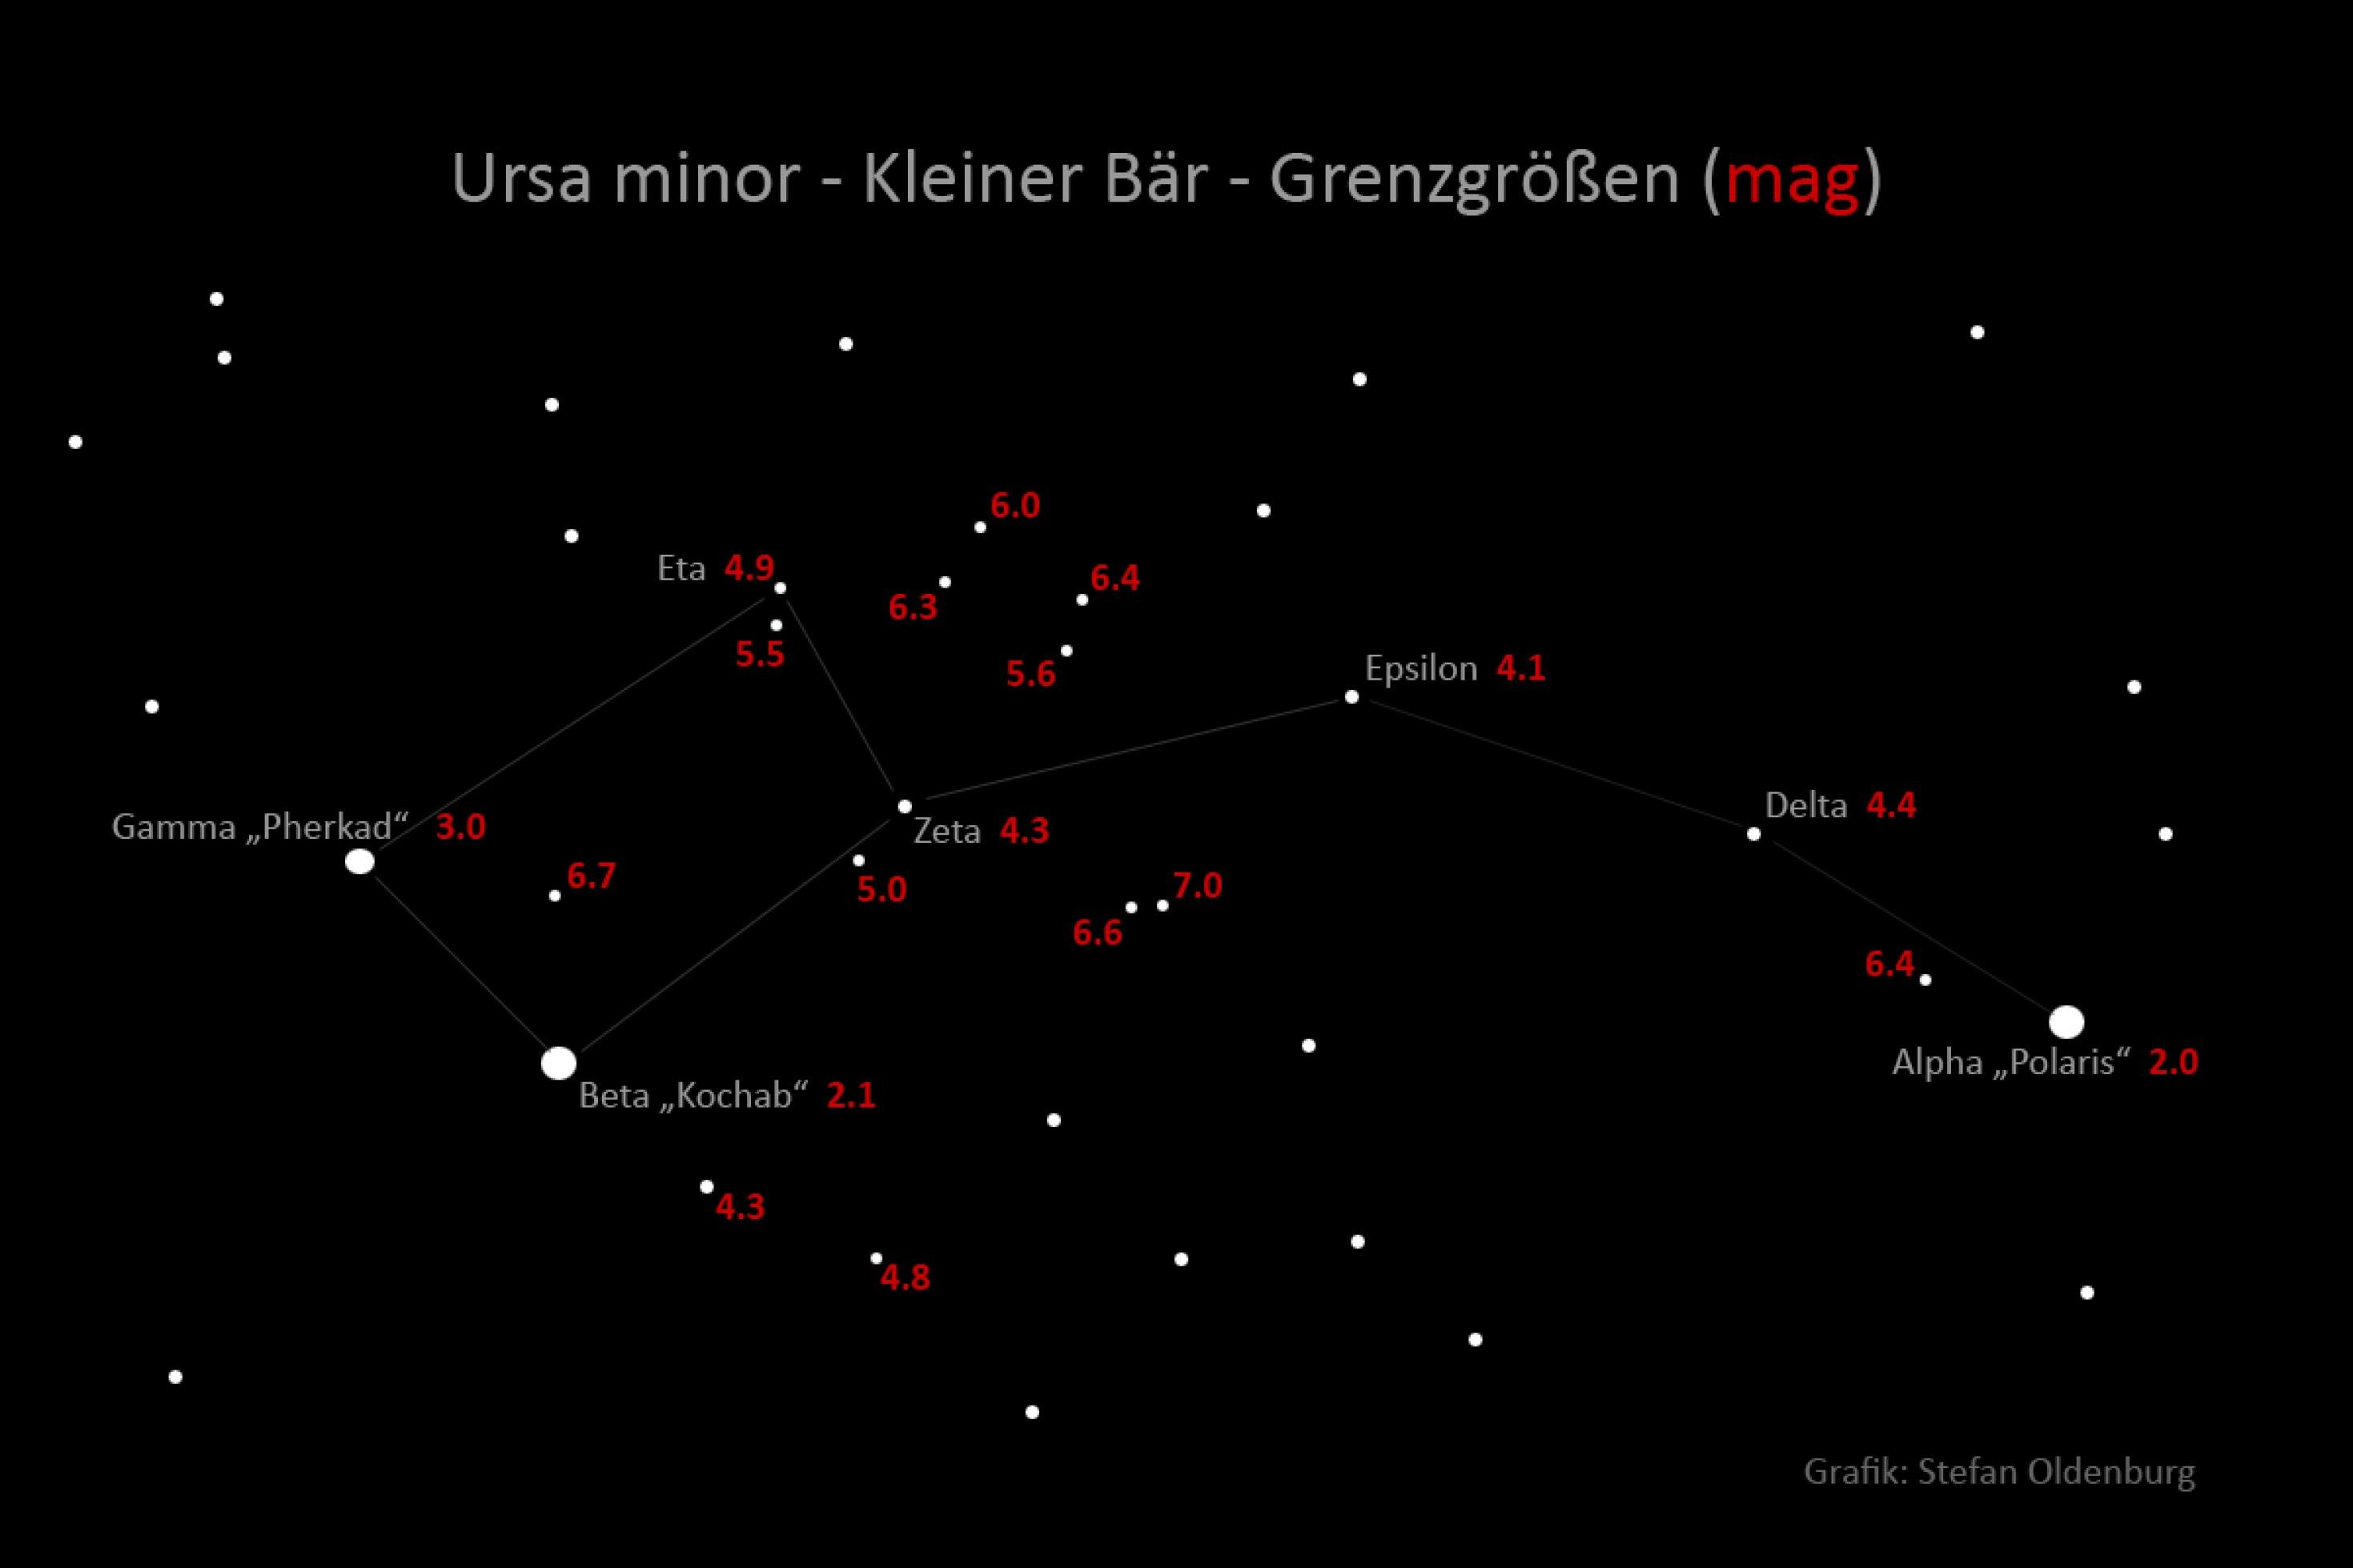 Das Bild zeigt das Sternbild Ursa minor mit Helligkeitsangaben. Dieses Sternbild eignet sich deshalb so gut zur visuellen Grenzgrößenbestimmung, da hier die Helligkeiten solcher Sterne dicht beieinander liegen, die auf der Wahrnehmungsgrenze zwischen „sehen“ und „nicht sehen“ liegen.